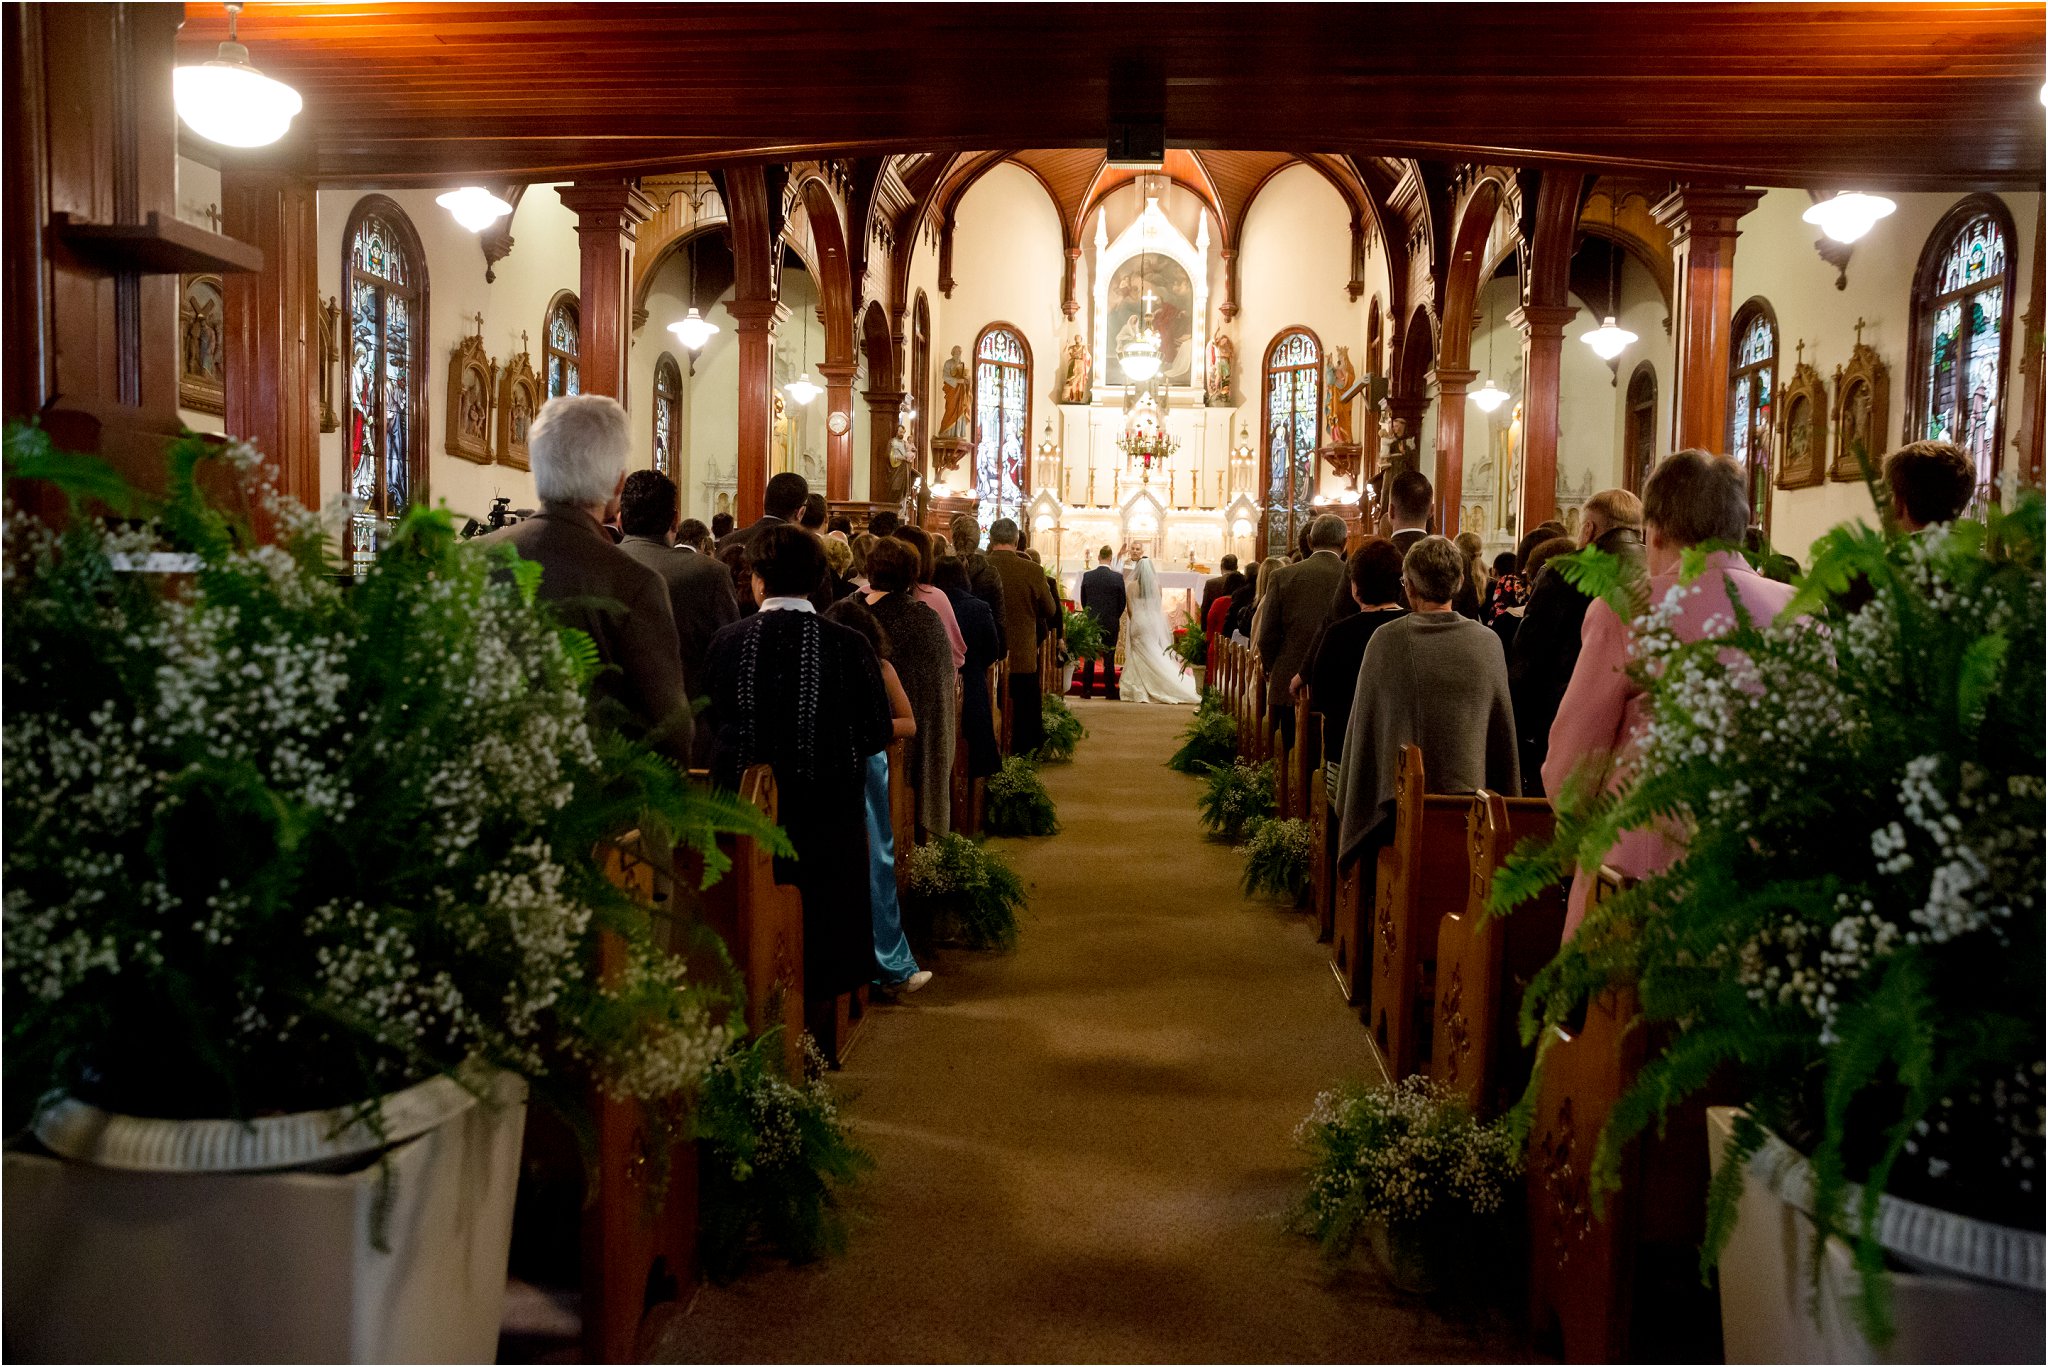 edmonton wedding photographer, nc photography, edmonton fall wedding photos,St. Joachim French Catholic Parish